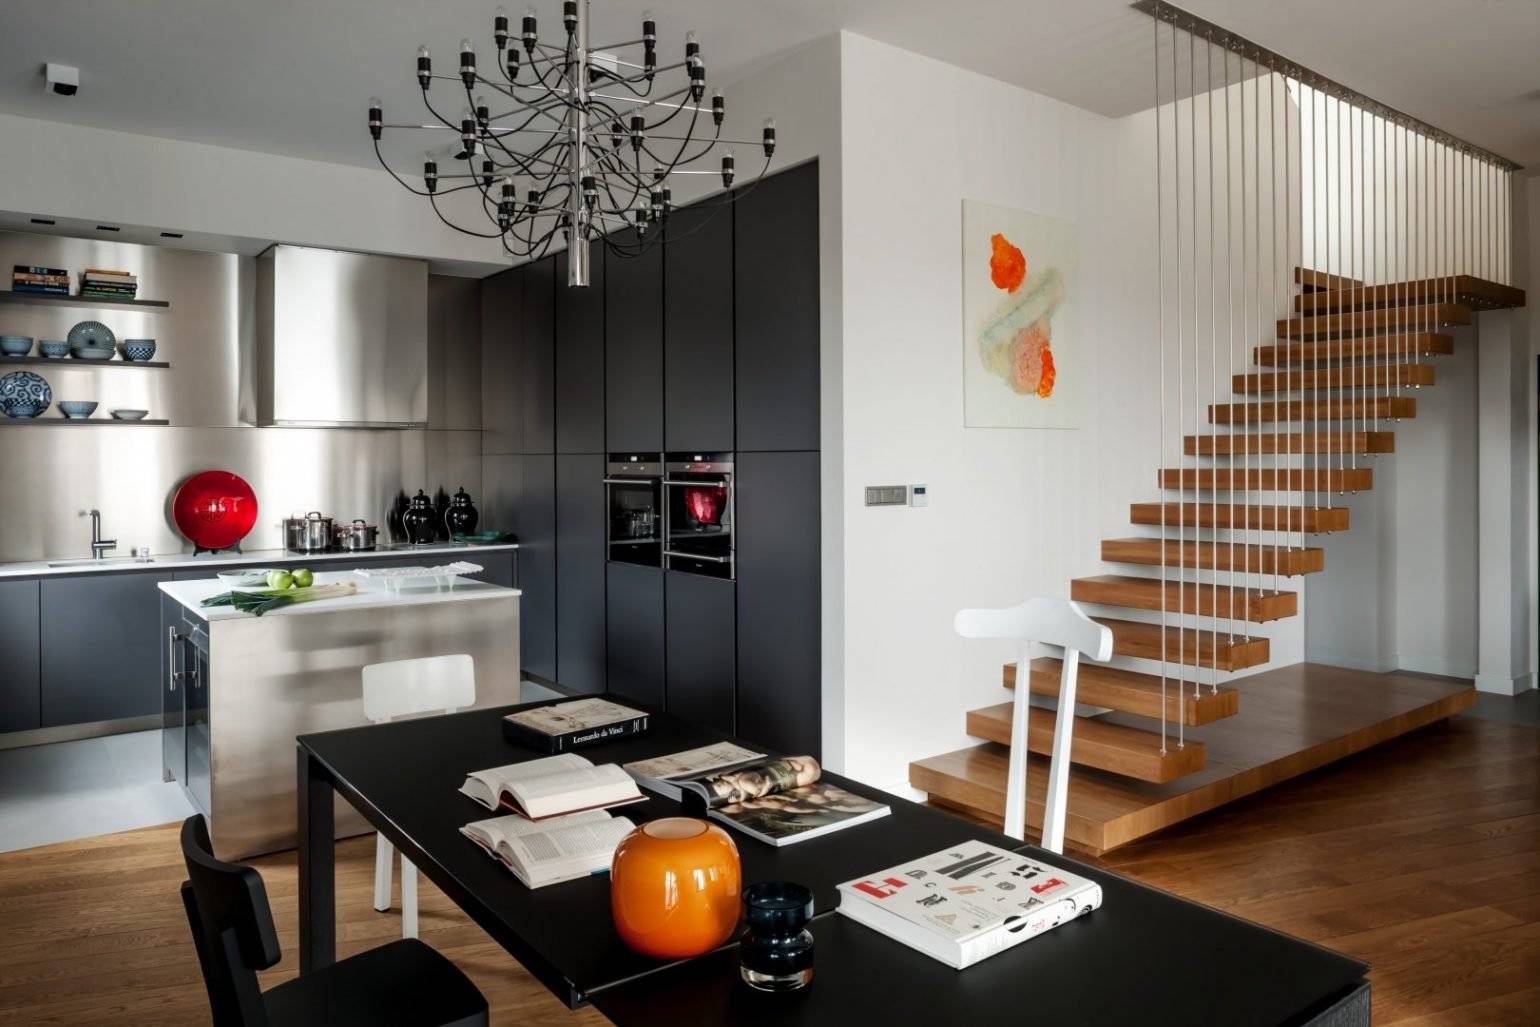 Дизайн двухуровневой квартиры +50 фото идей интерьера